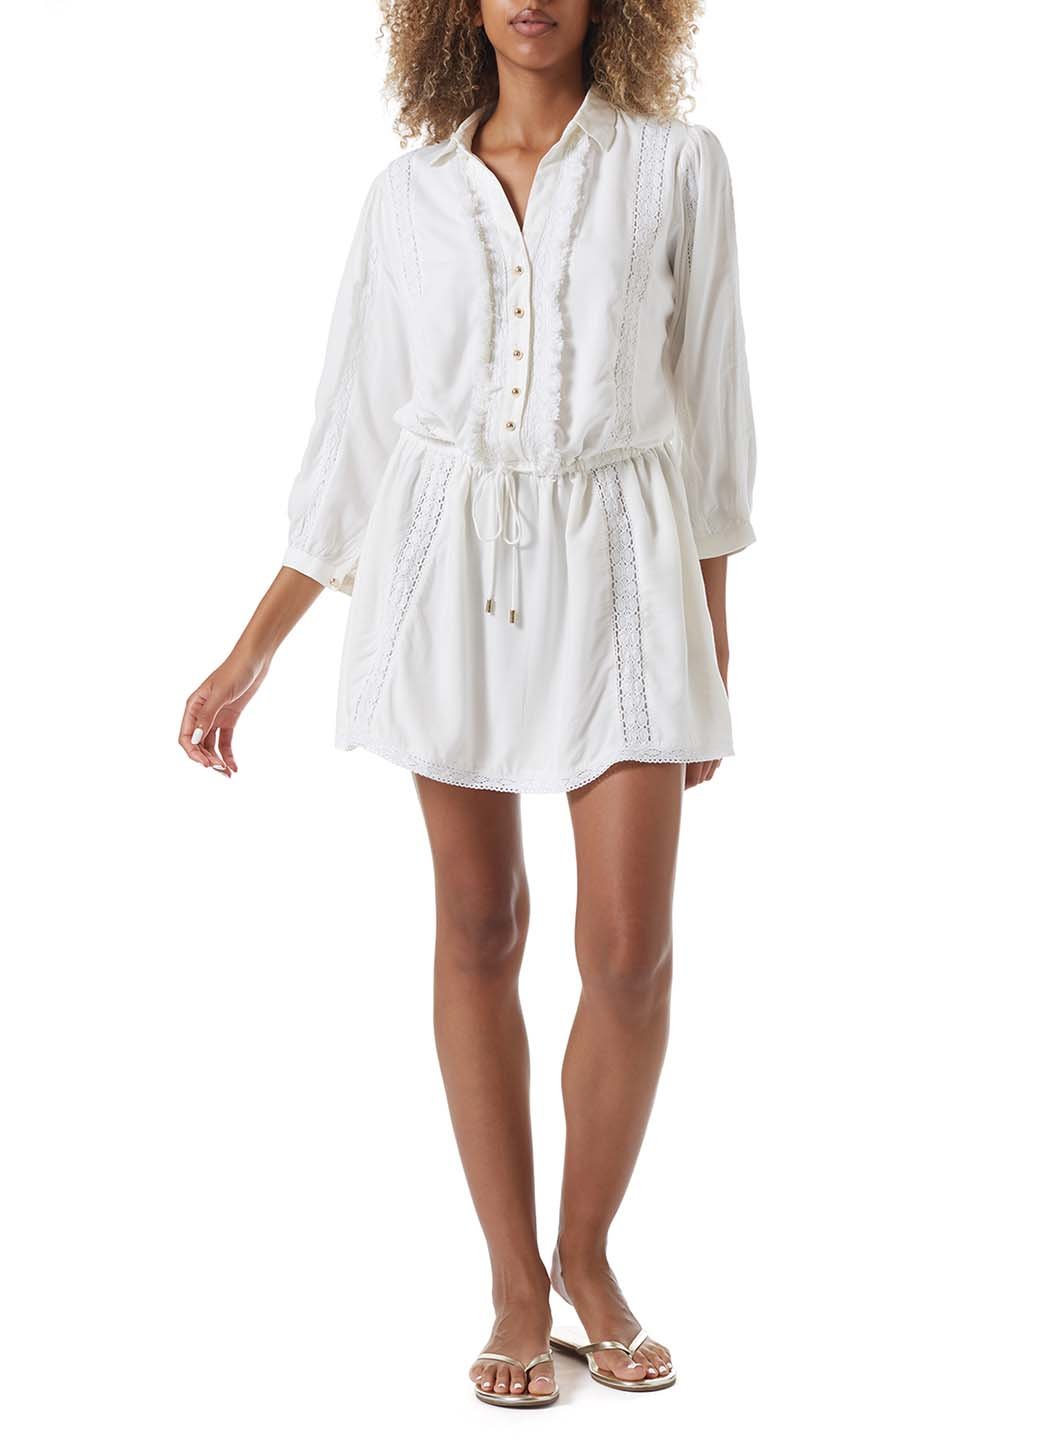 Melissa Odabash Scarlett Cream Button Down Short Dress | Official Website